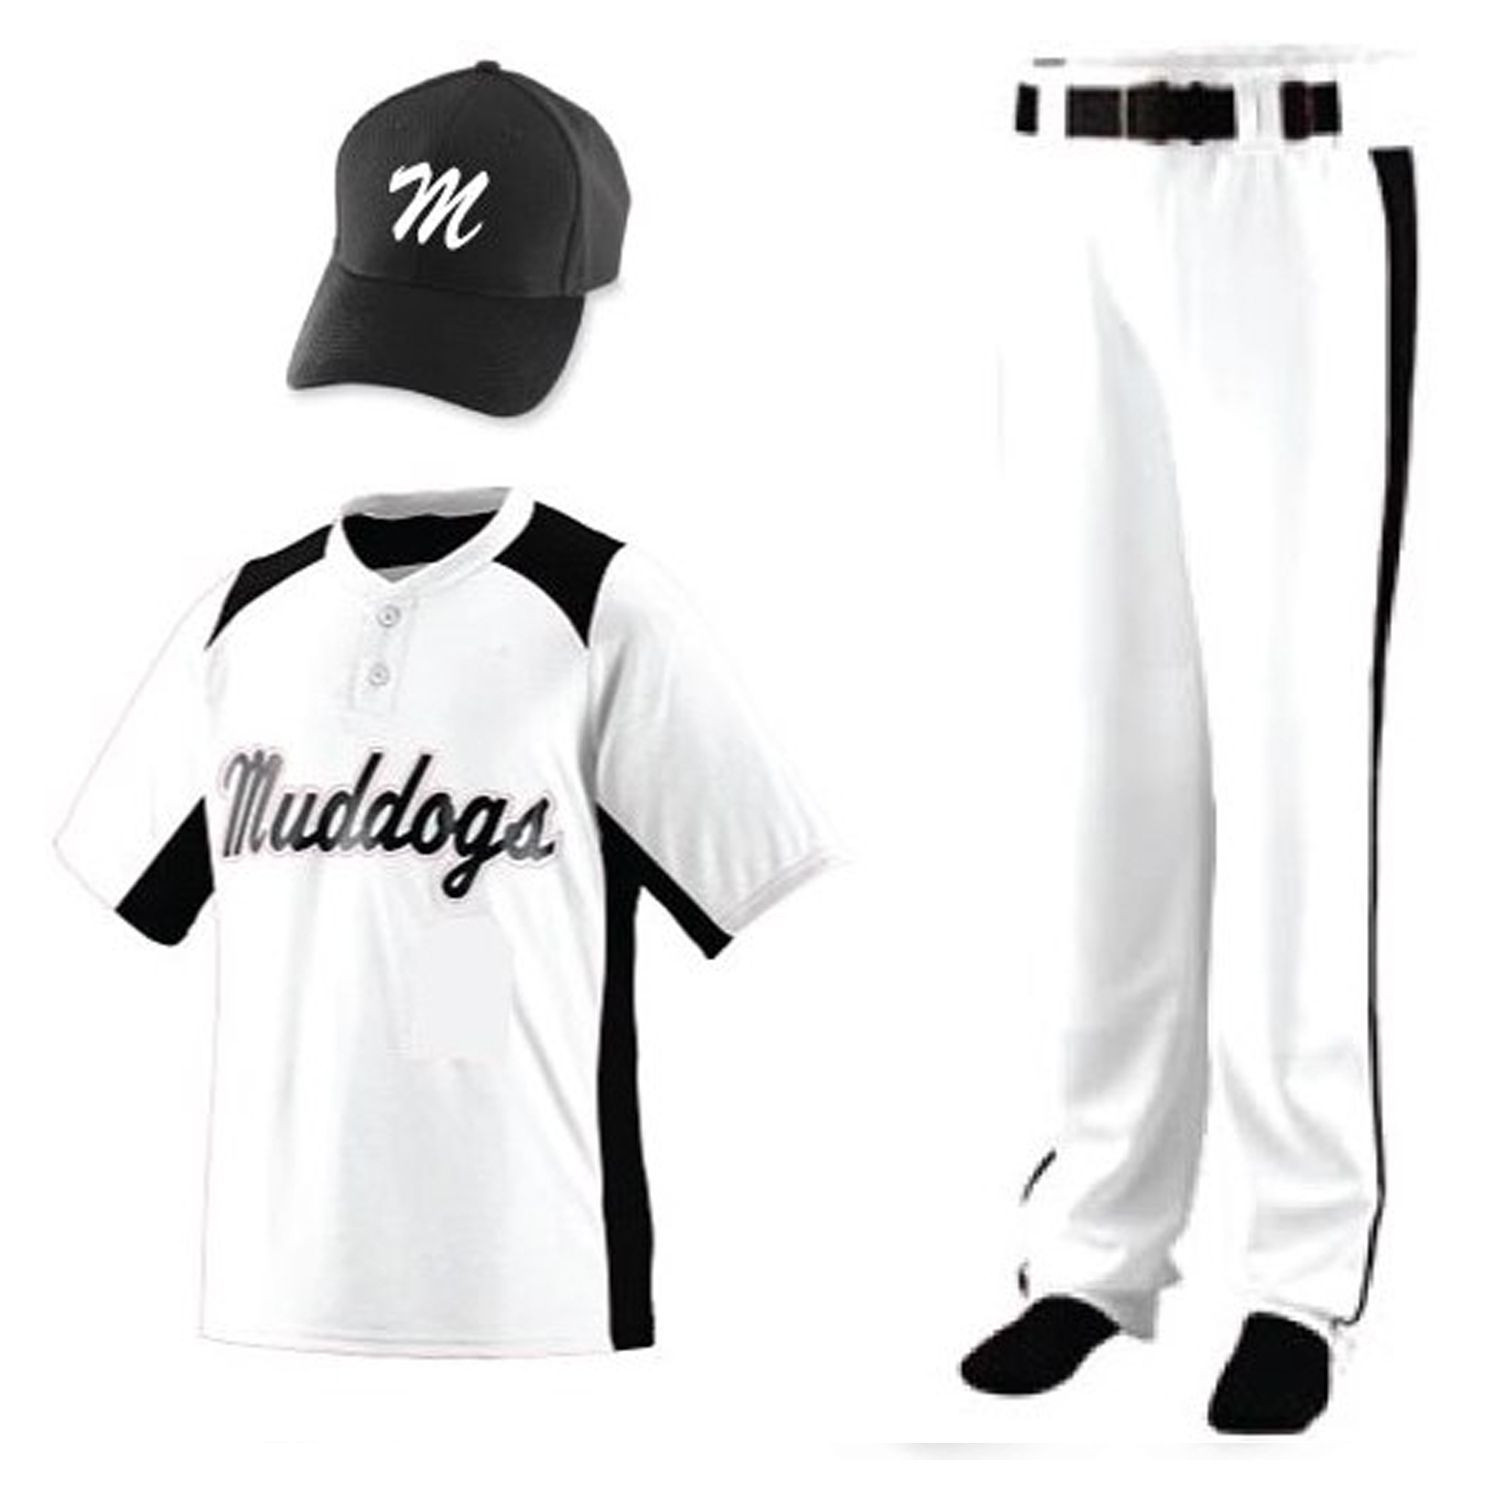 最佳质量定制设计升华棒球训练服